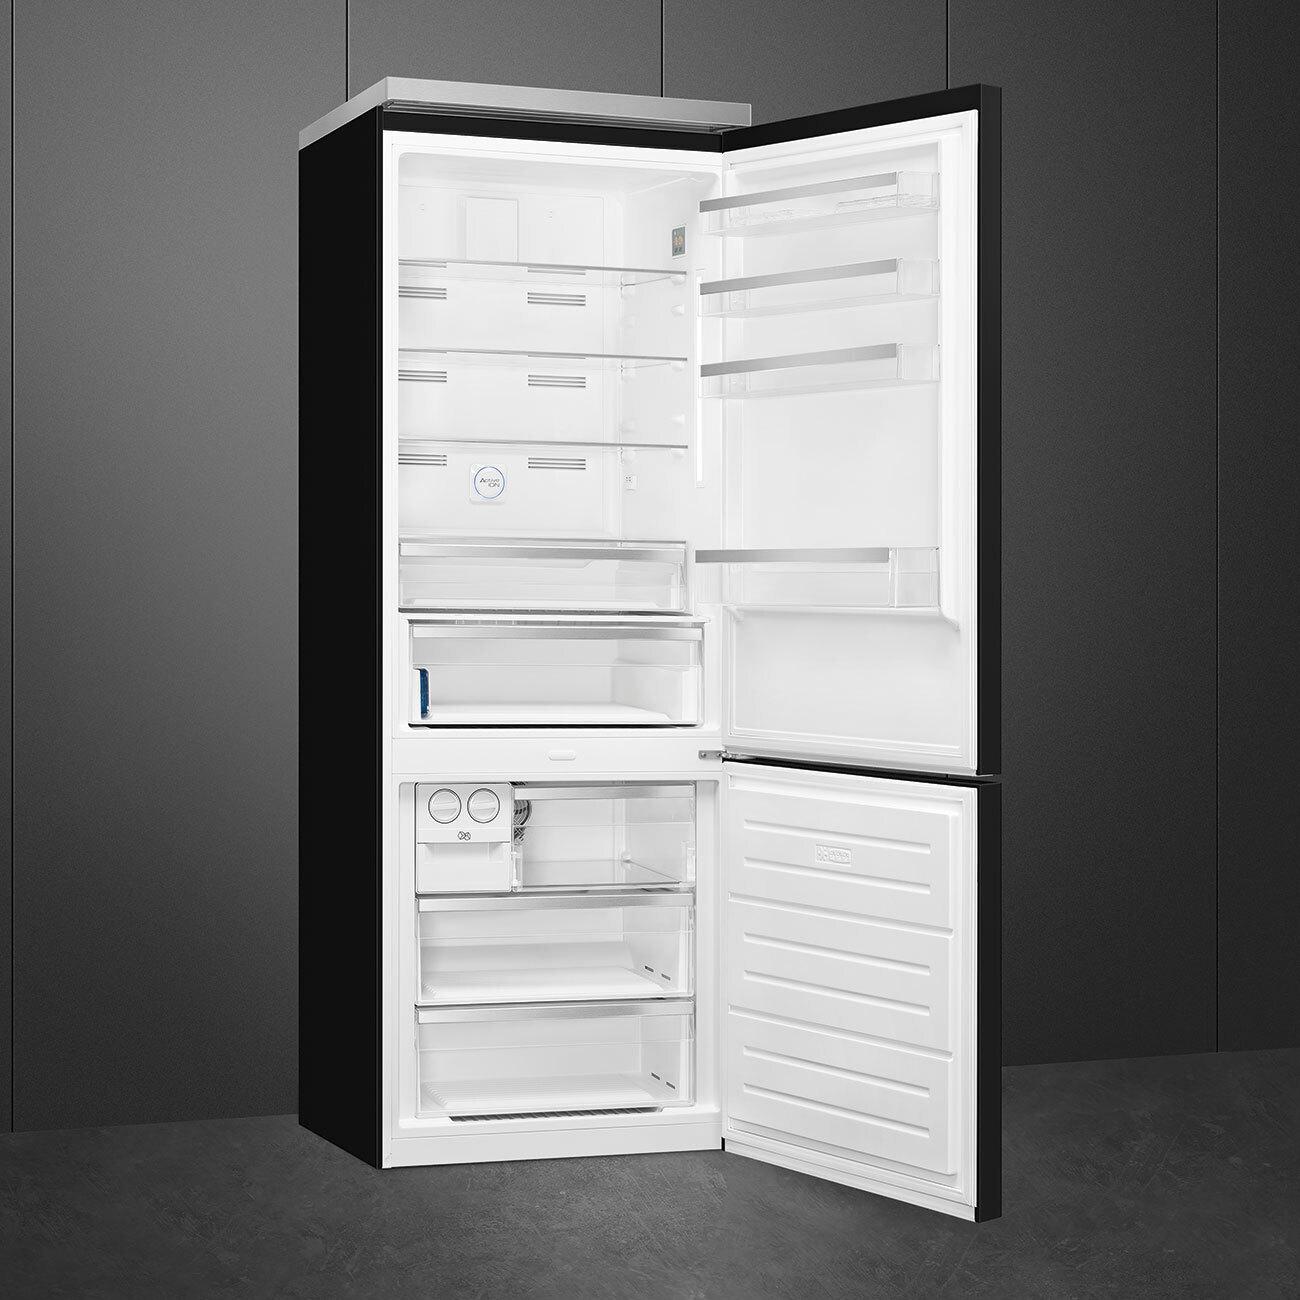 Smeg FA490URBL Refrigerator Black Fa490Urbl